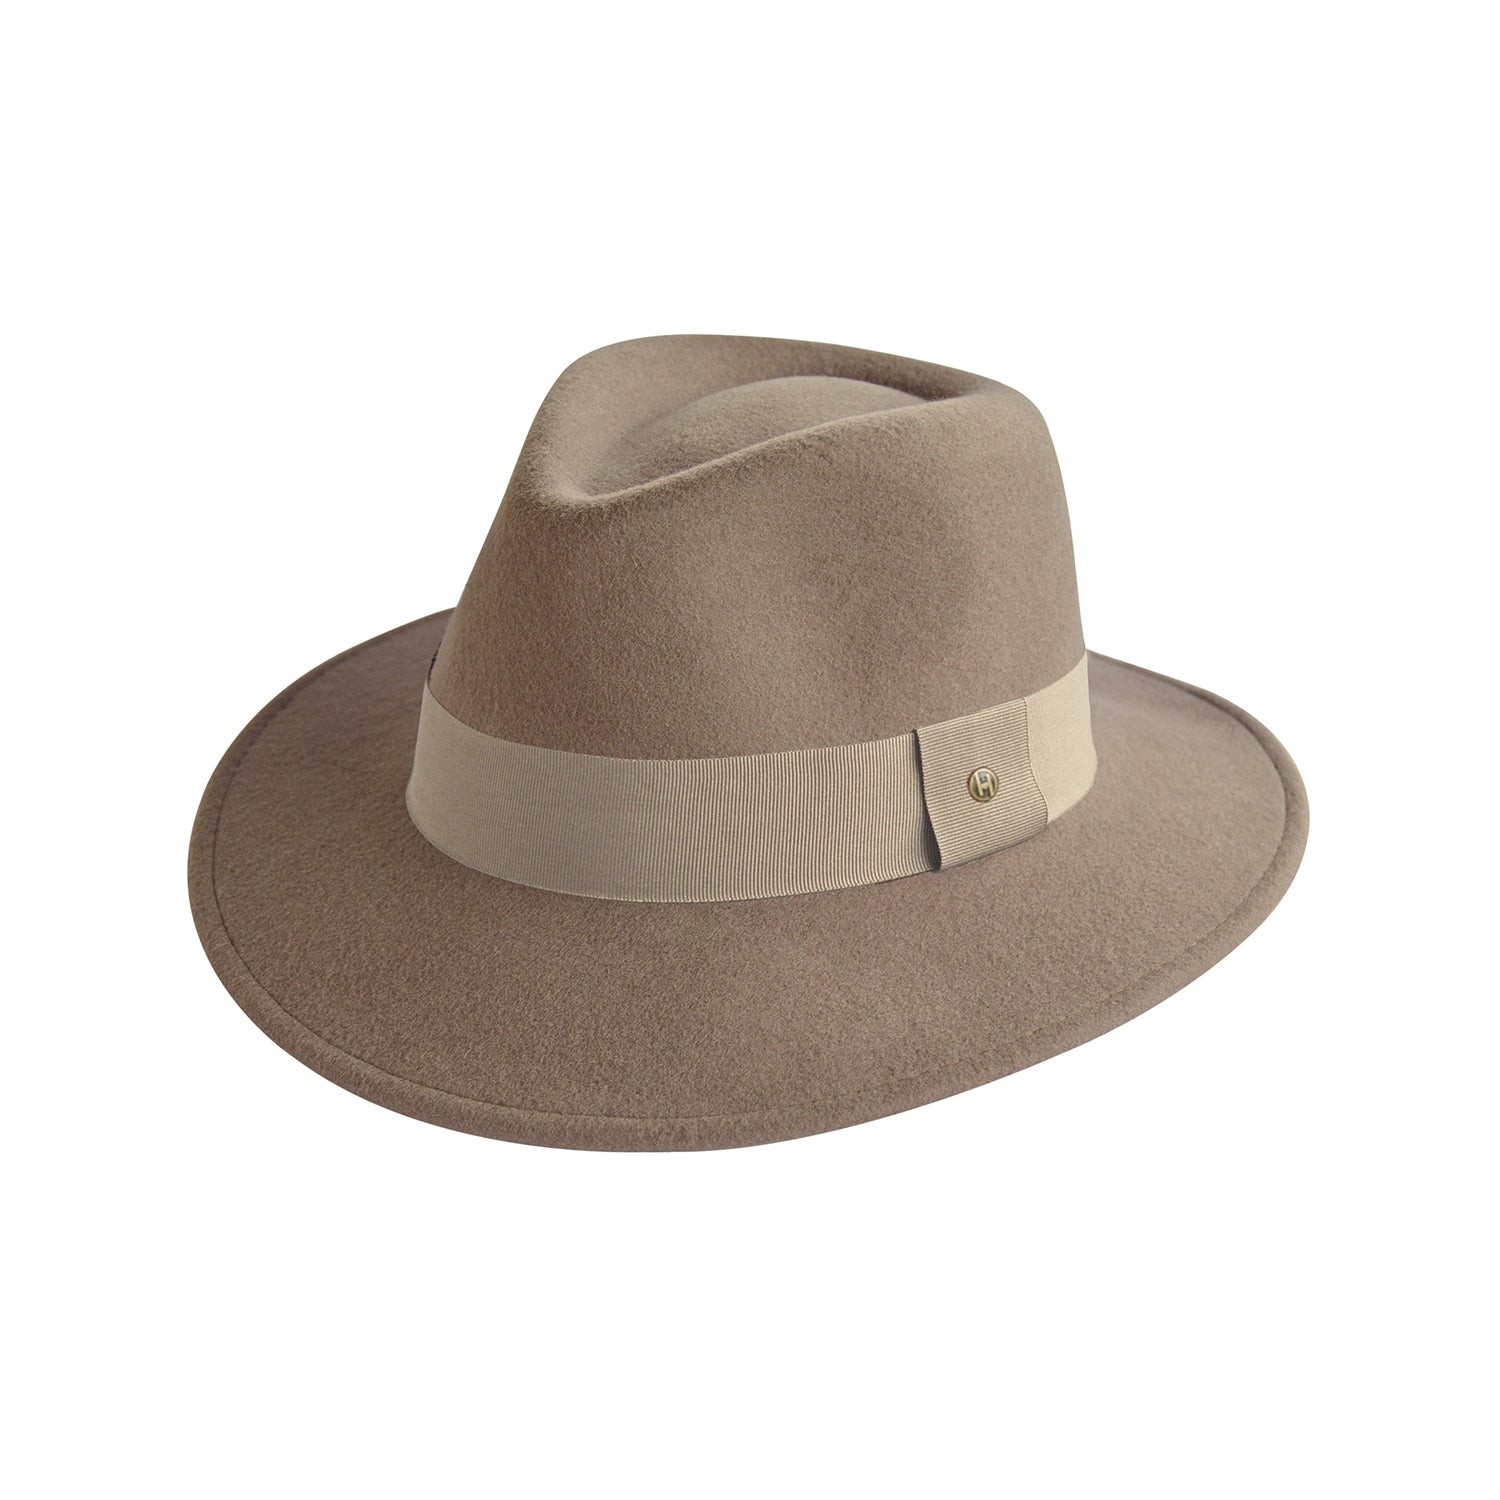 4 Ways to Clean a Felt Hat  Vintage felt hat, Felt hat, Felt cowboy hats